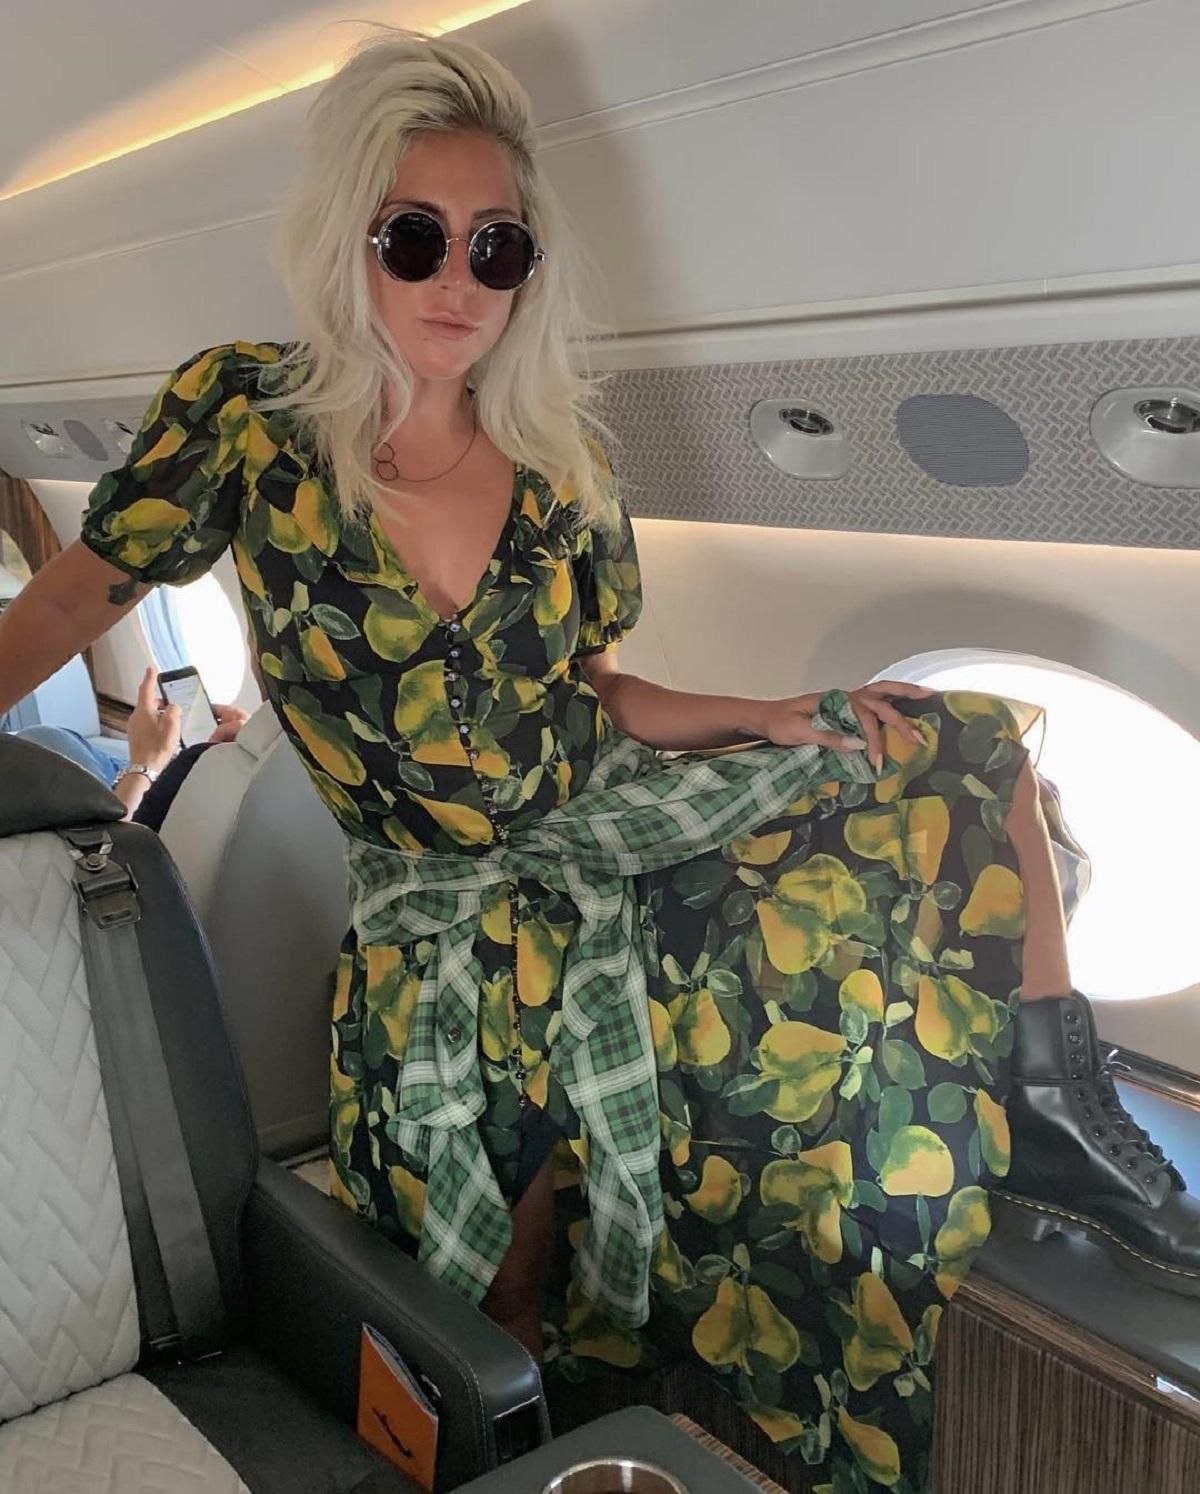 Леди Гага примерила стильное платье от Marc Jacobs на борту самолета: фото